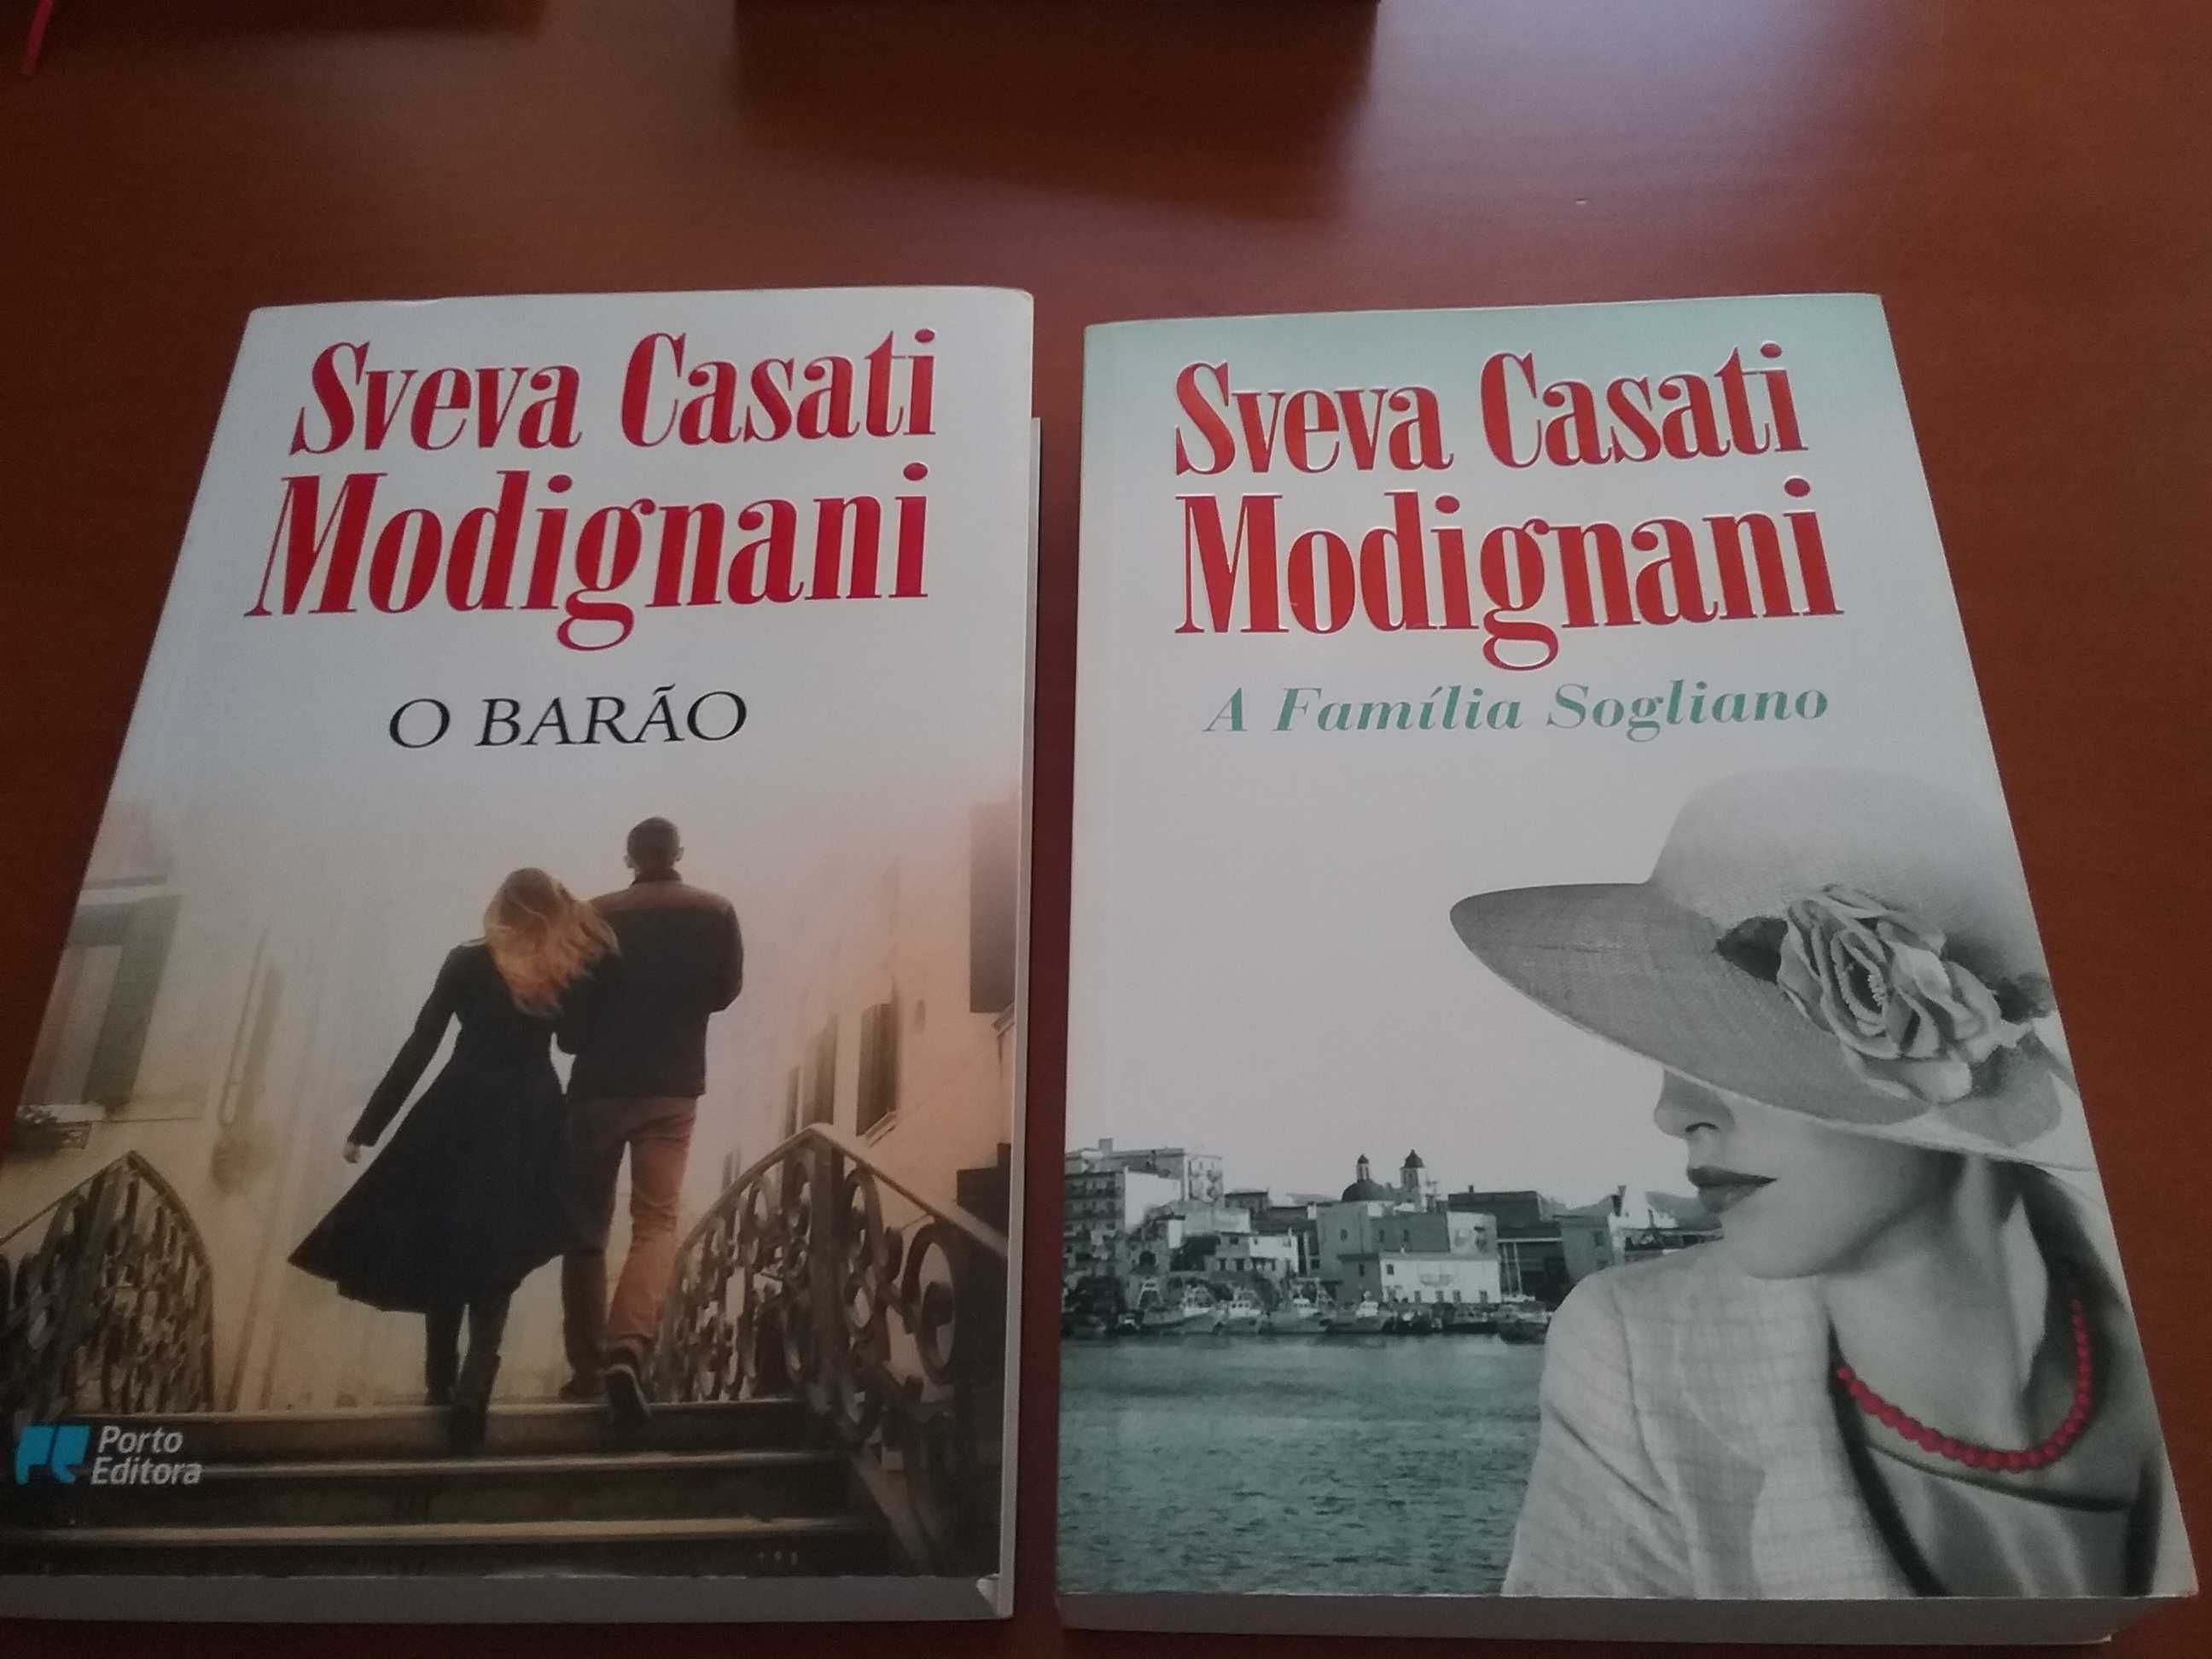 Sveva Casati Modignani e outros livros